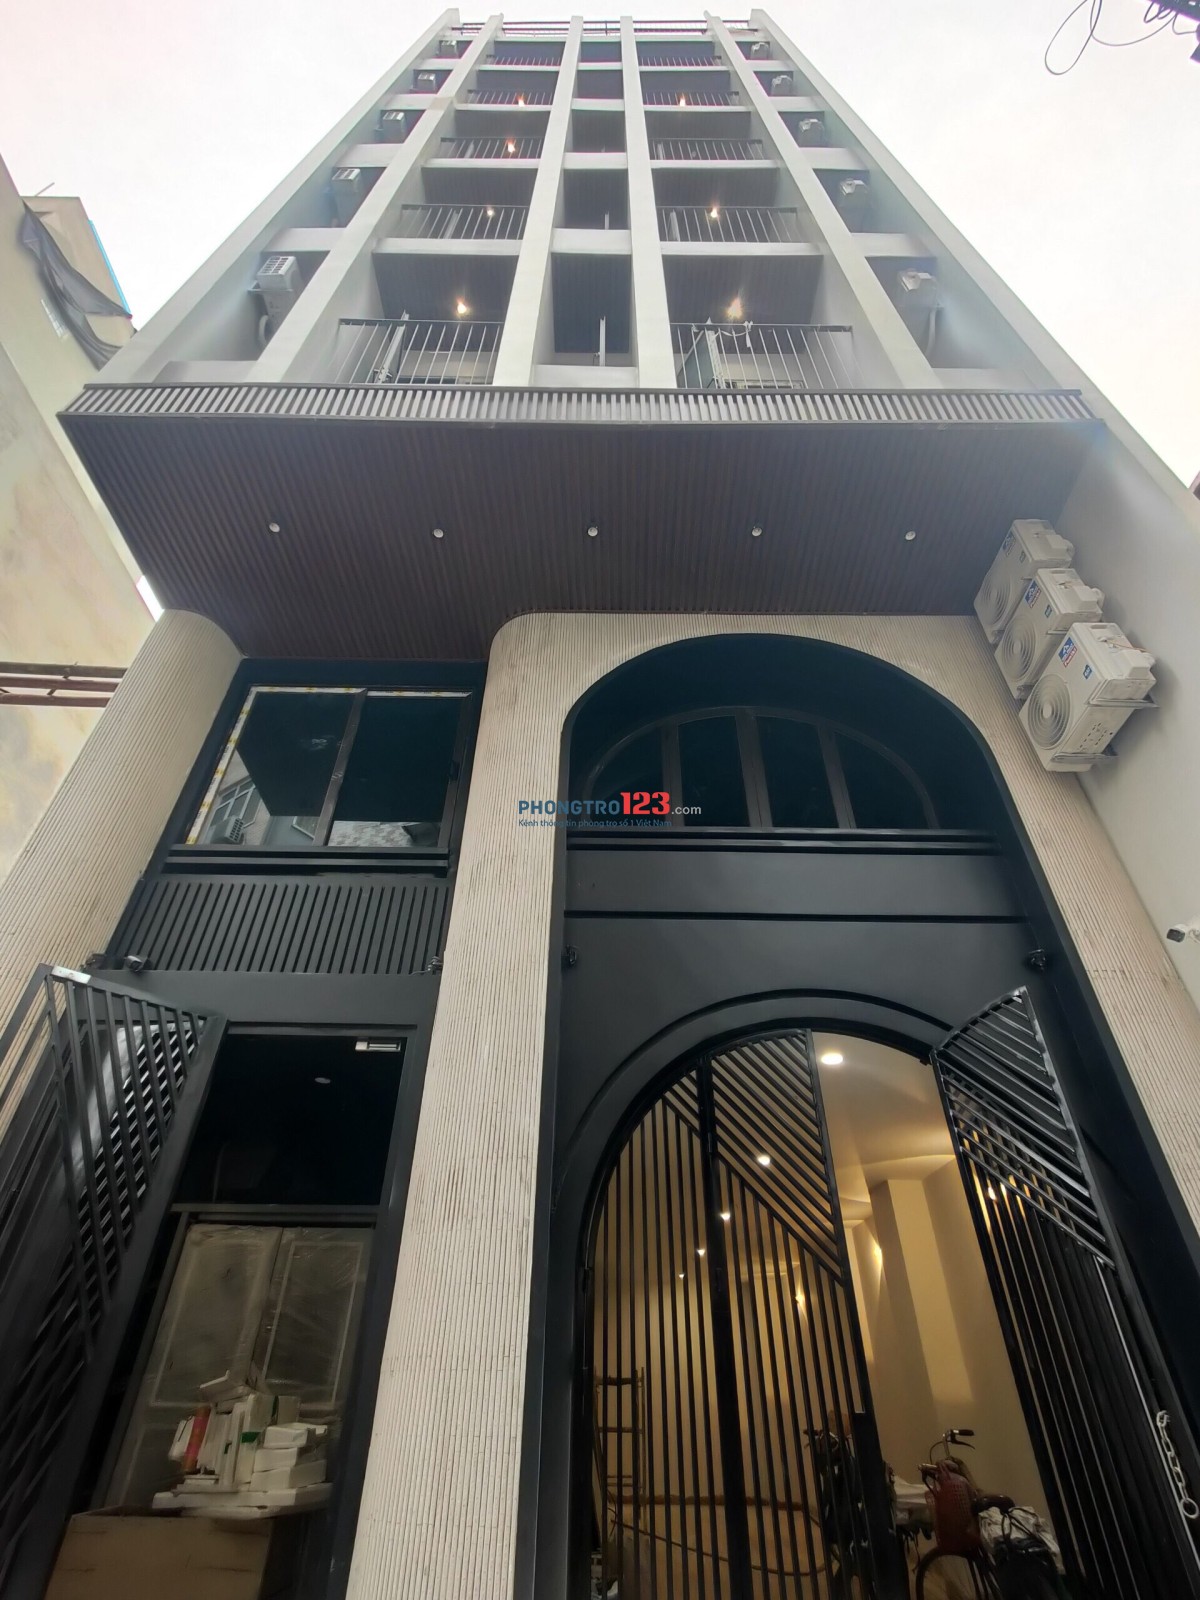 TingTong khai trương tòa nhà CCMN 10 tầng khu trung tâm Miếu Đầm - MỄ trì gần KHÁCH SẠN MARRIOT